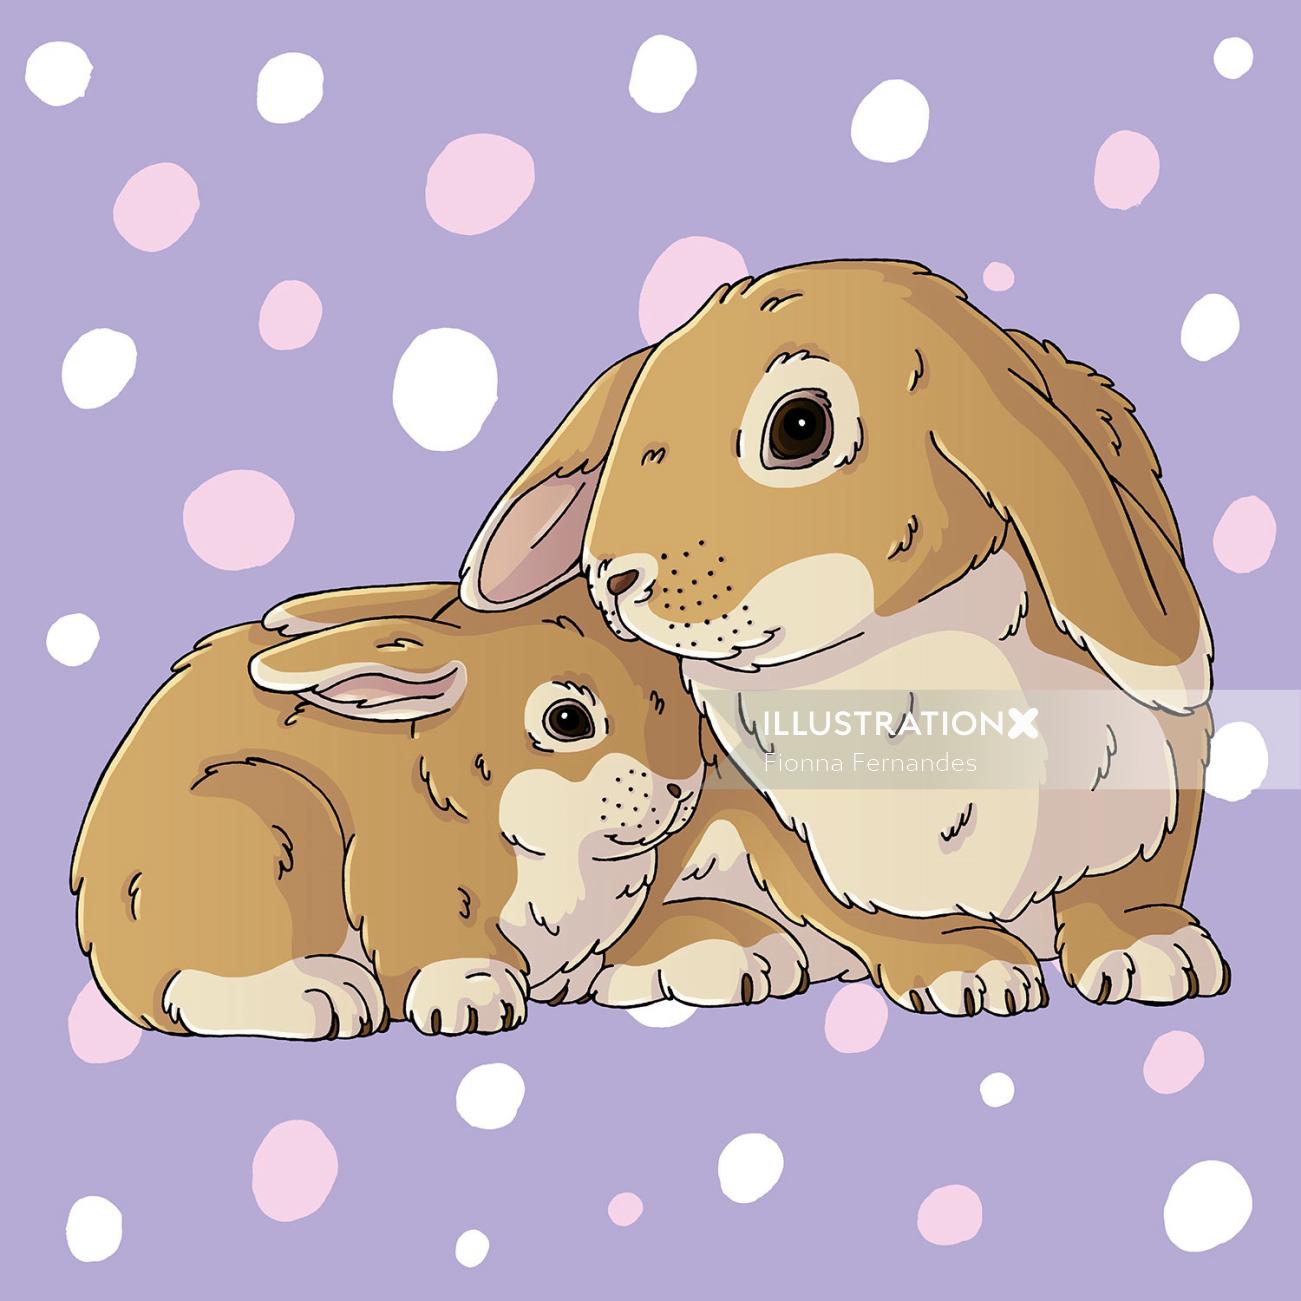 Cuddly Bunnies Graphic Art